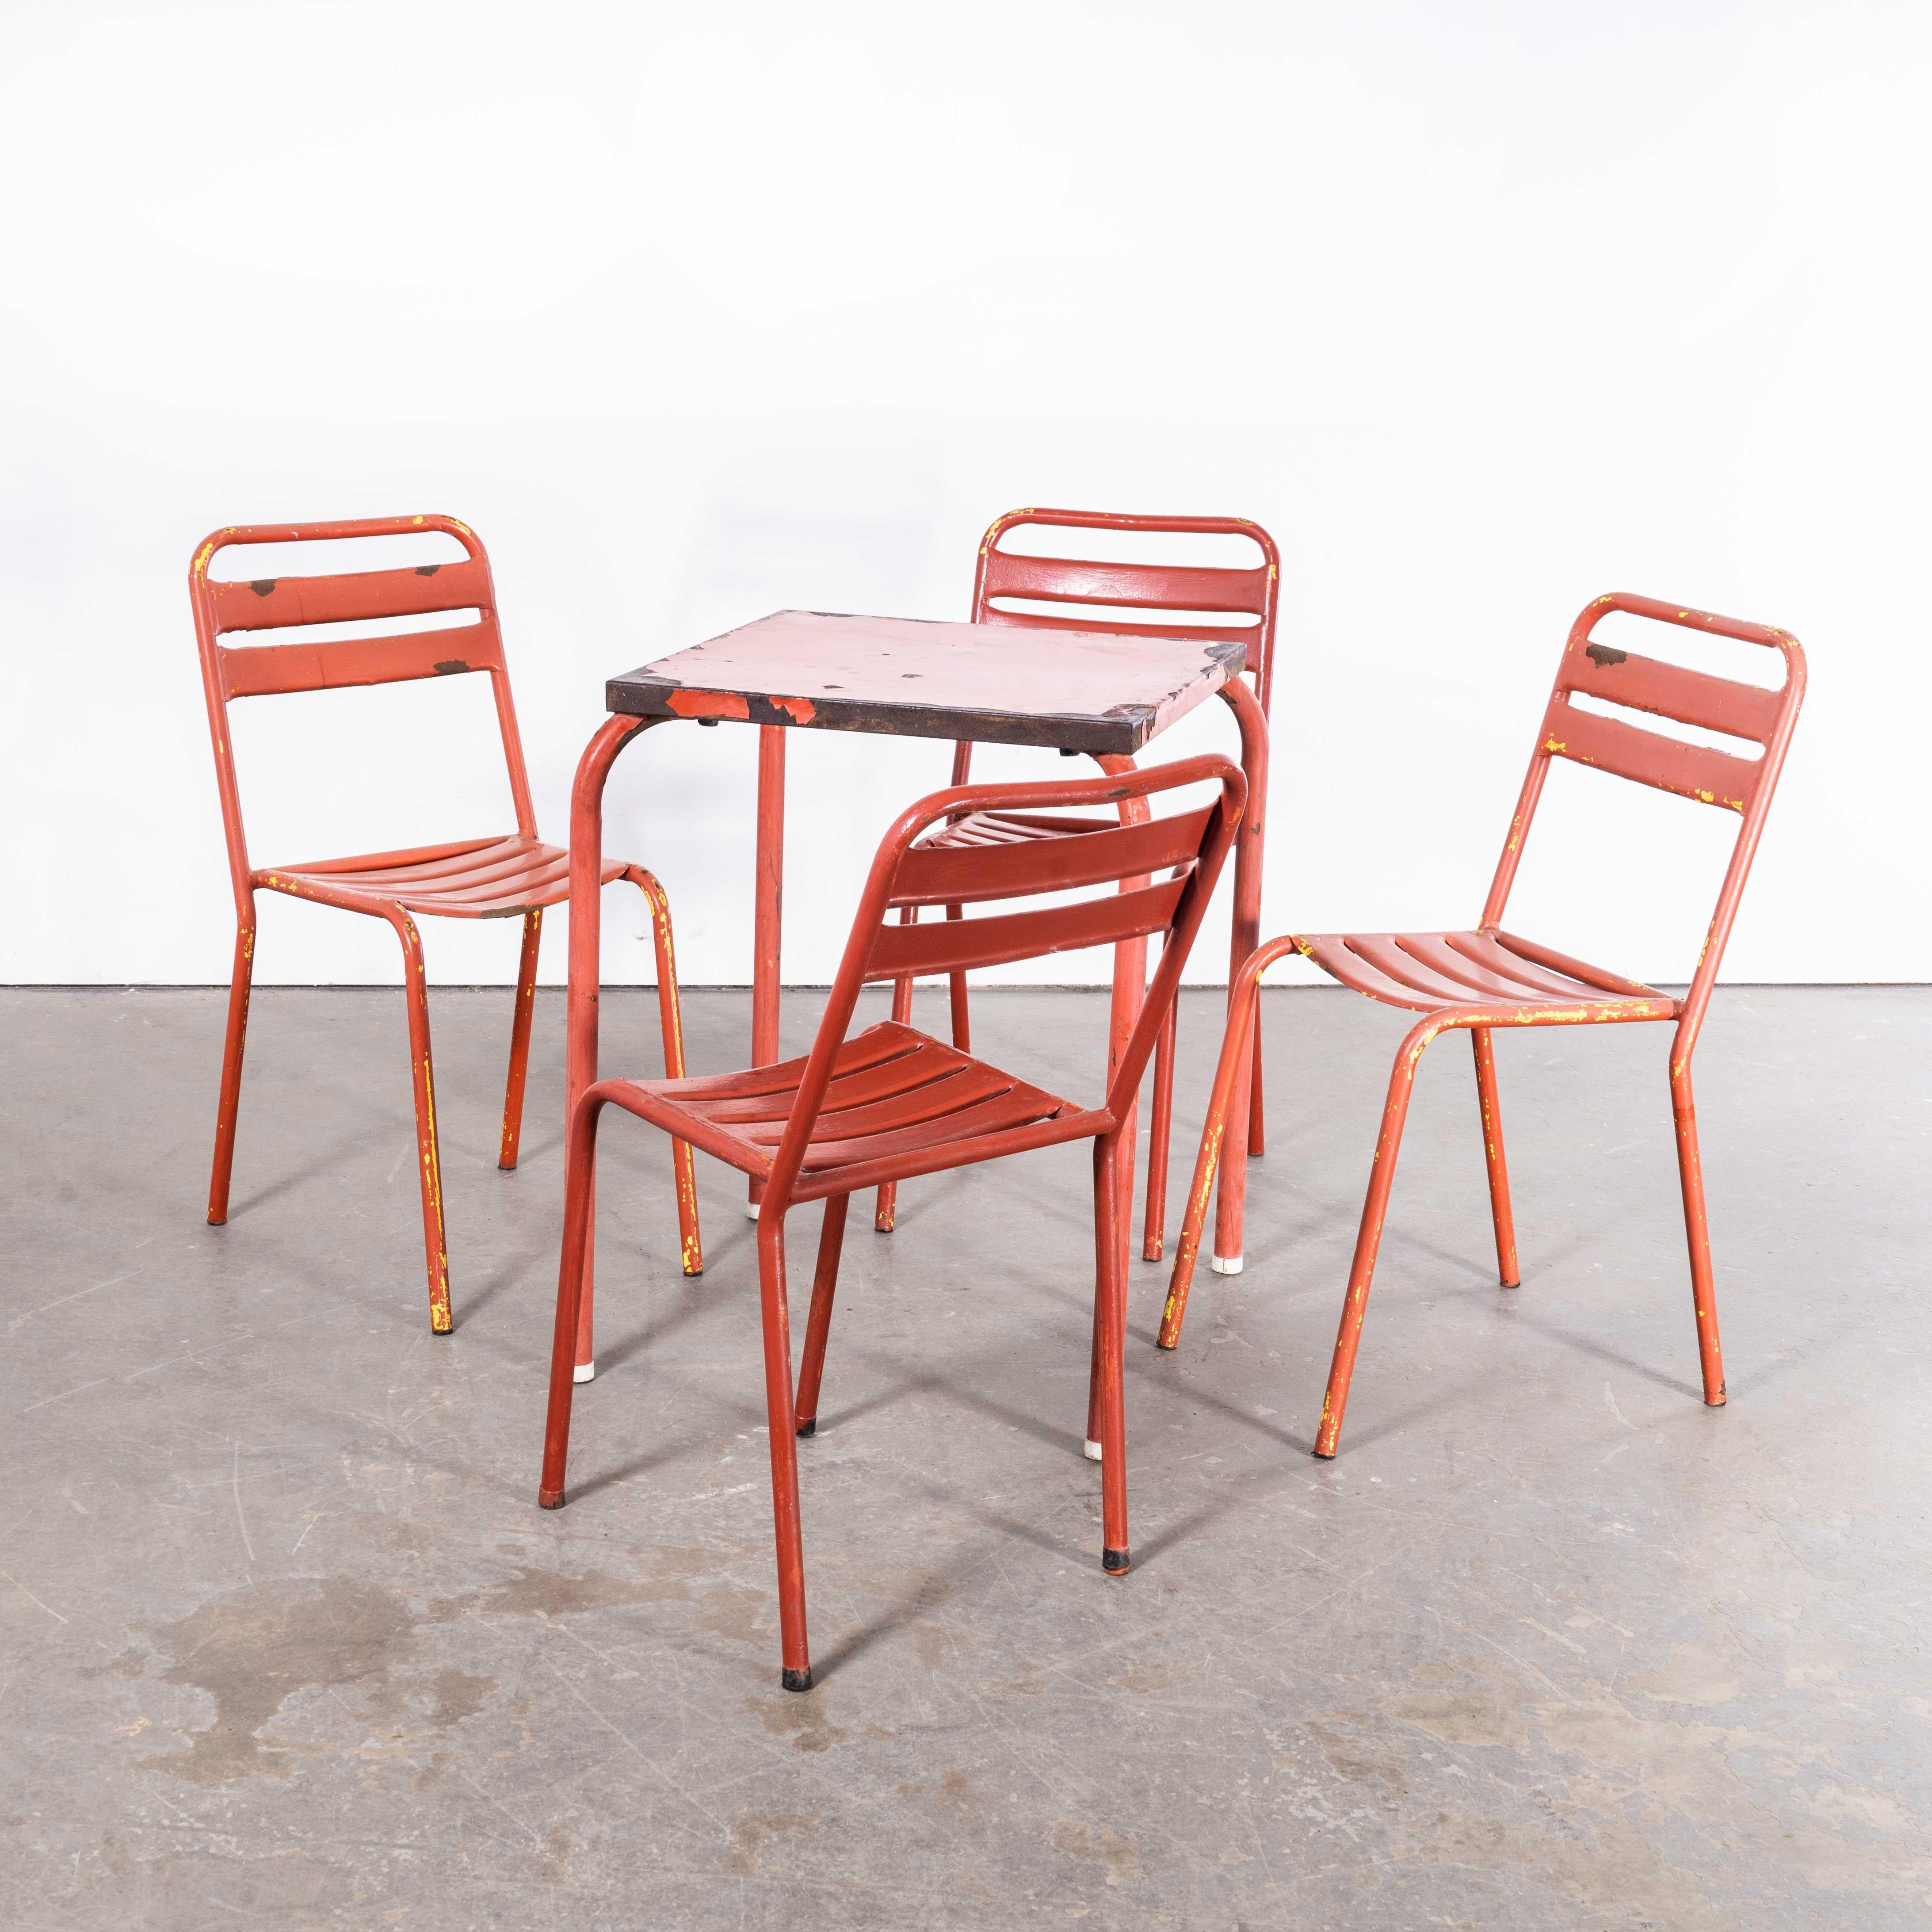 1950's Original Französisch Outdoor Tisch und Stuhl Set - Vier Stühle (2616)
1950's Original Französisch Outdoor Tisch und Stuhl Set - Vier Stühle. Diese Auflistung ist für einen Metalltisch und vier Metall-Gartenstühle, wie gezeigt, mit unpassenden